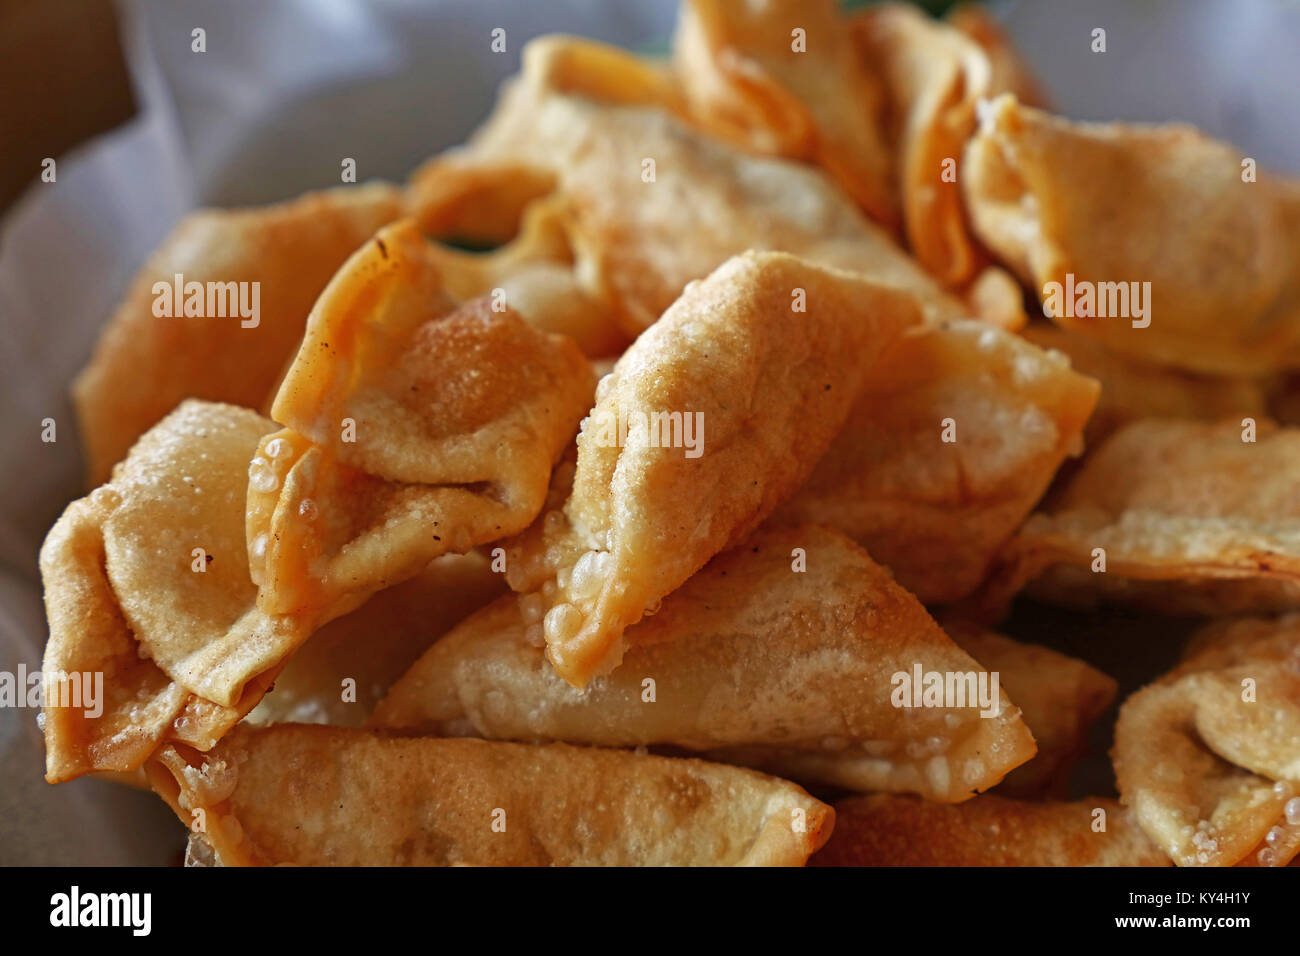 Close up partie des Jiaozi chinois traditionnels dumplings frits sur papier, high angle view Banque D'Images